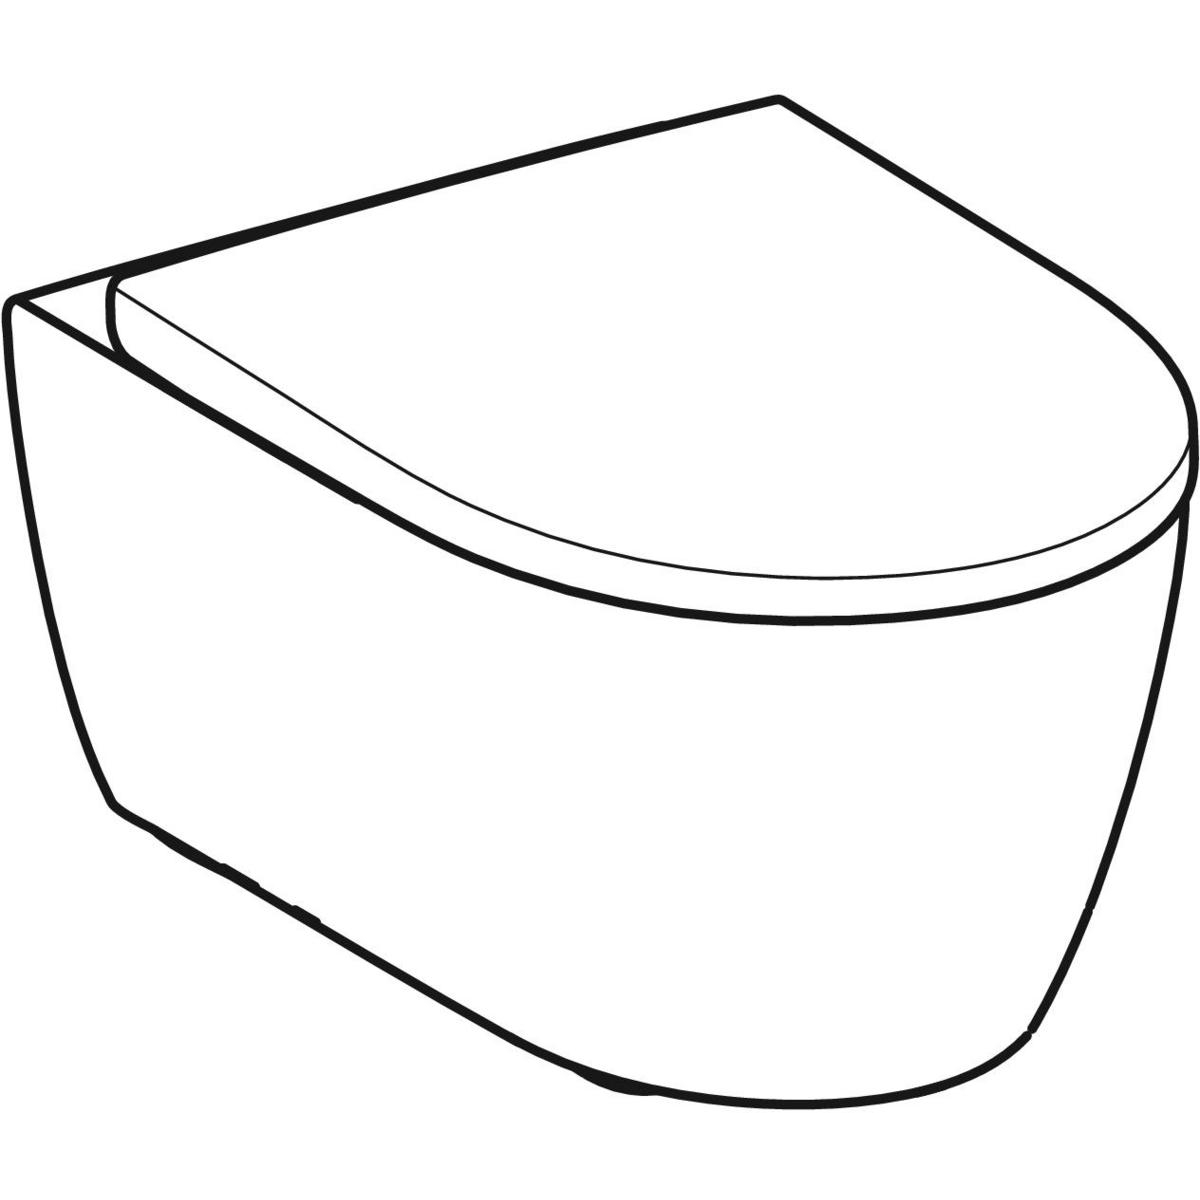 Geberit Icon WC suspendu pack à fond creux rimfree 36.6x53cm avec abattant  softclose blanc - 501.664.00.1 